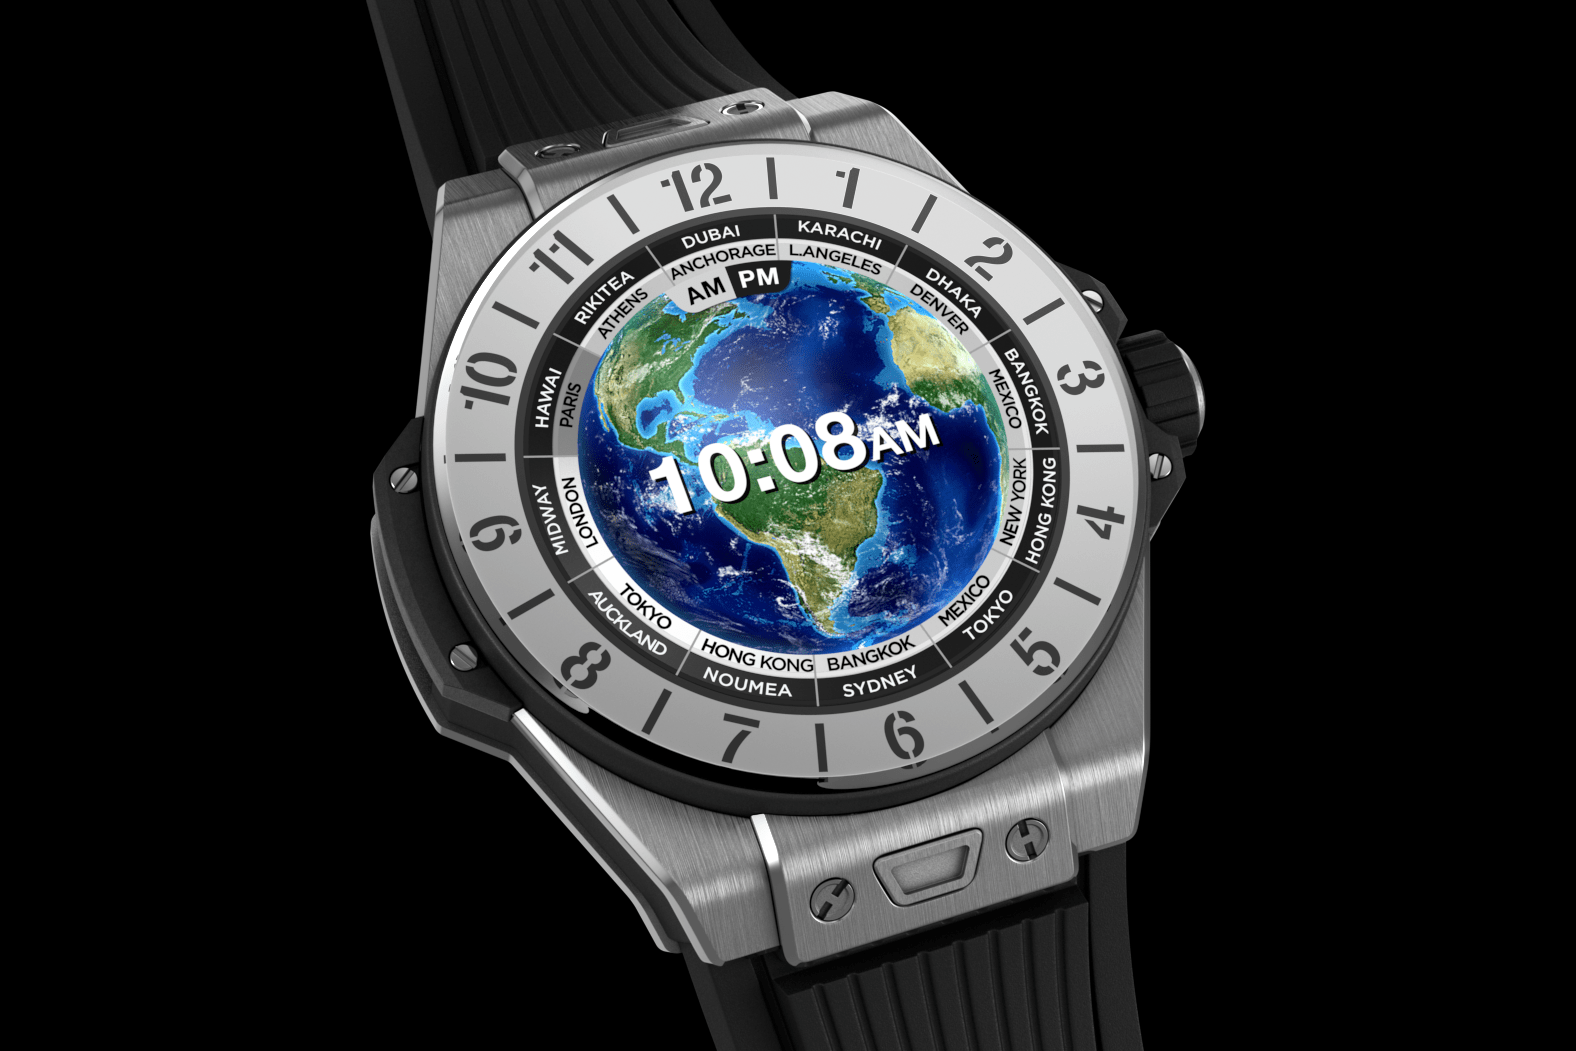 Hublot’un yeni akıllı saati 5200 dolarlık ‘Big Bang e’ tanıtıldı